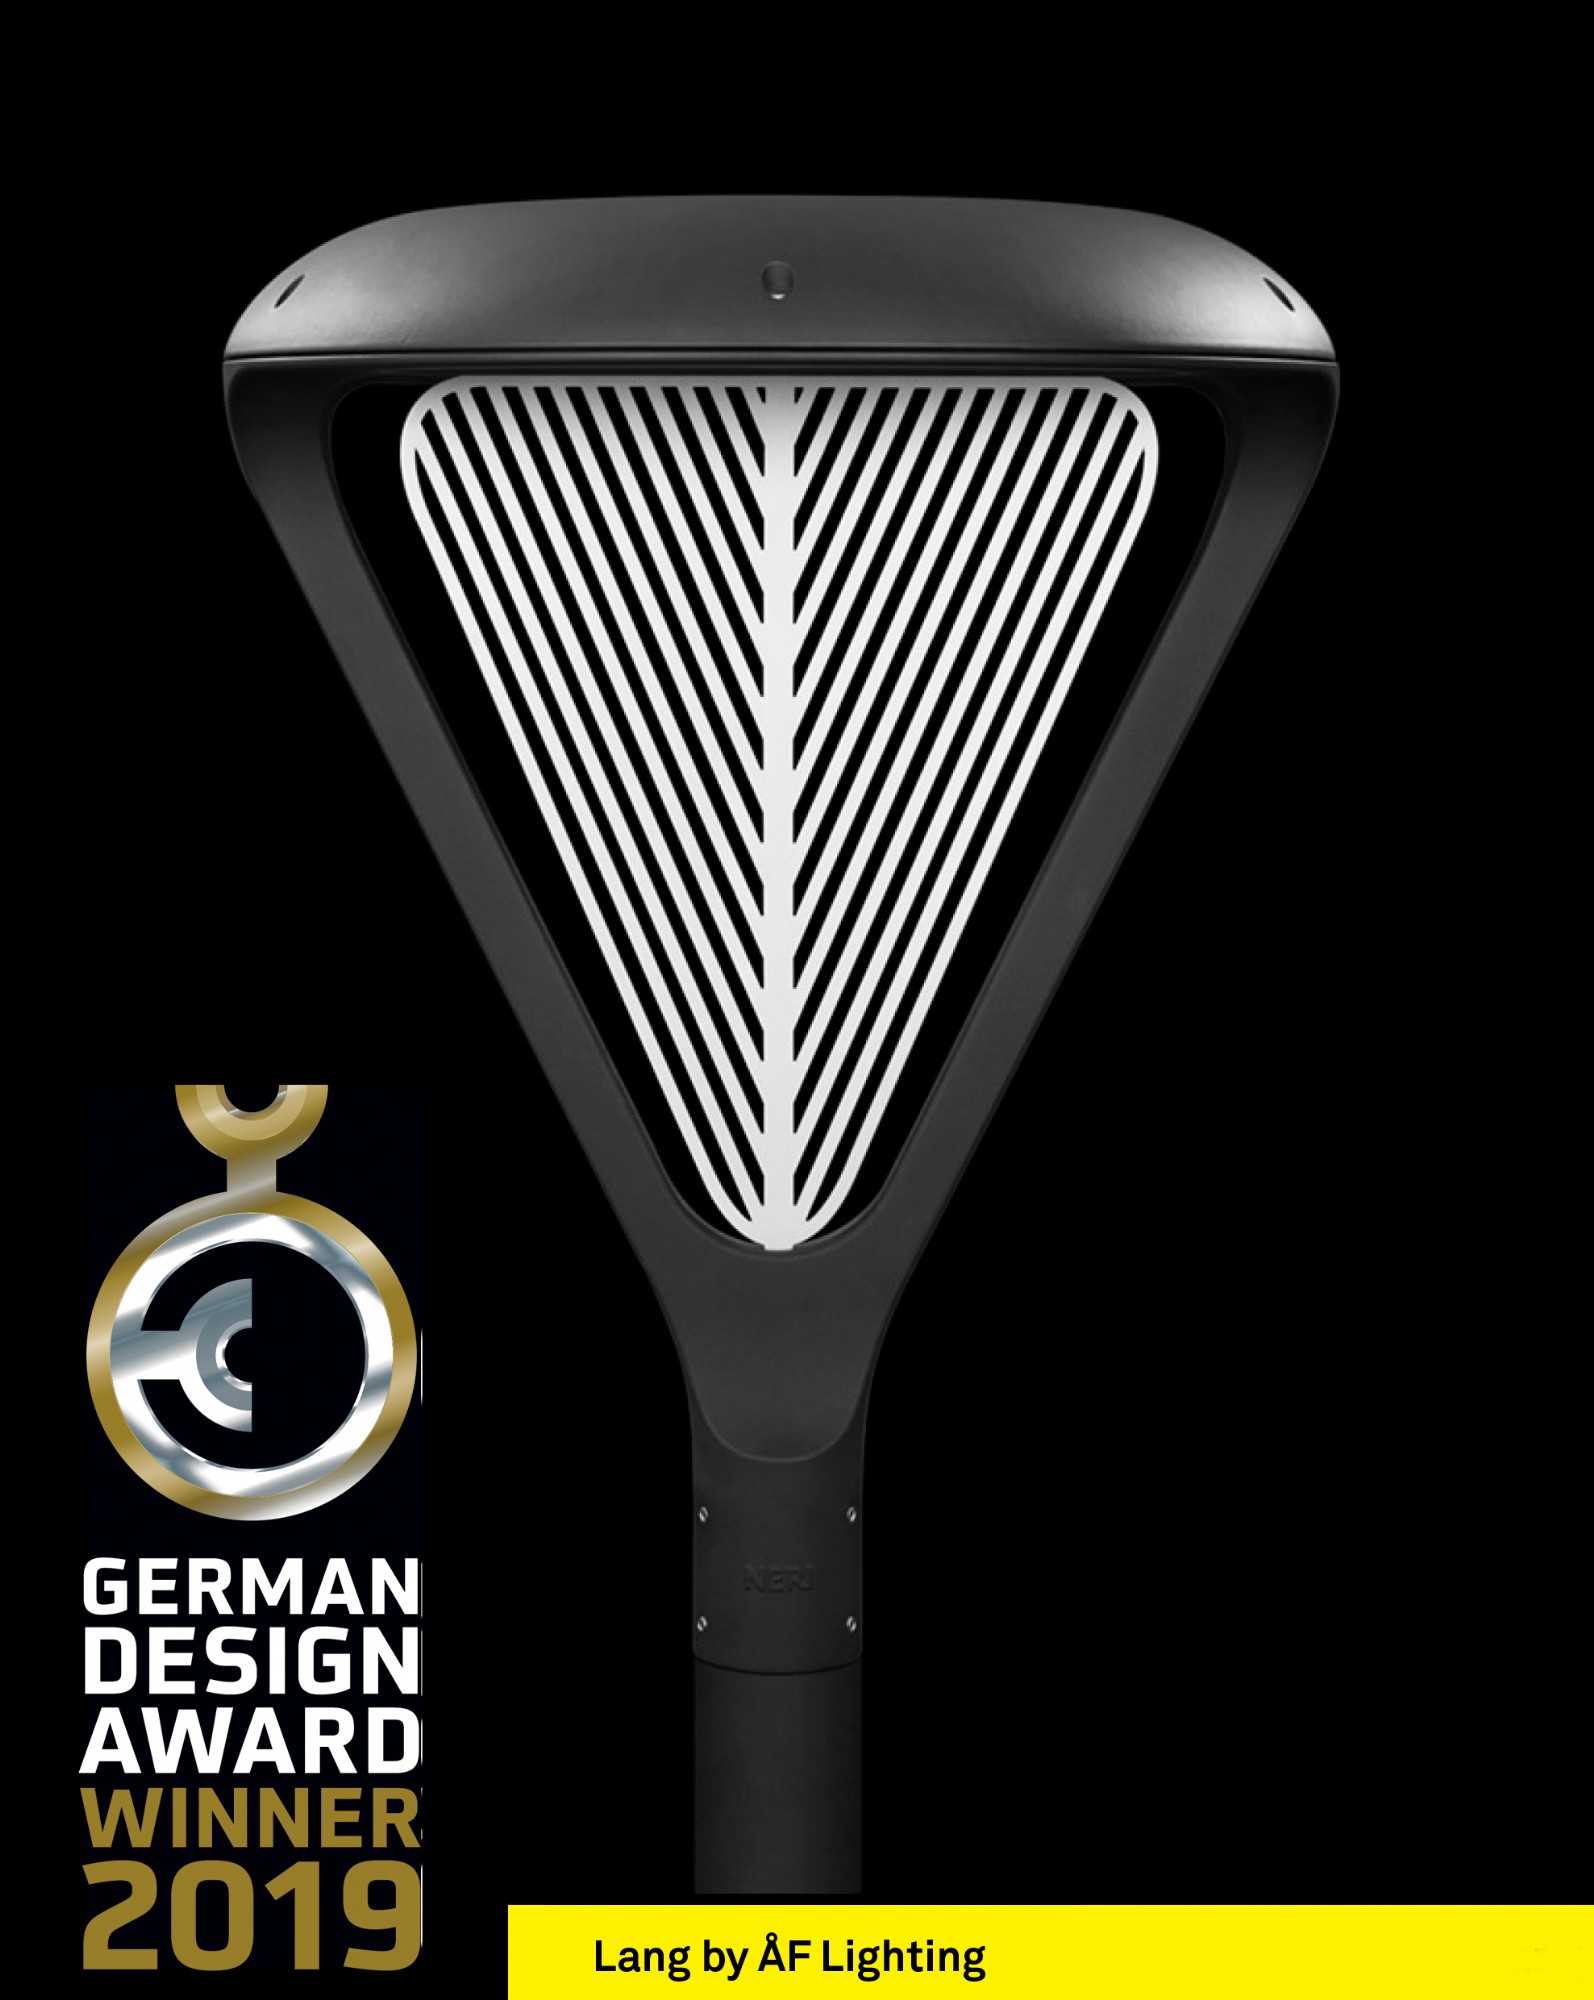 LED vejarmatur designet af ÅF Lighting Lang fra Neri